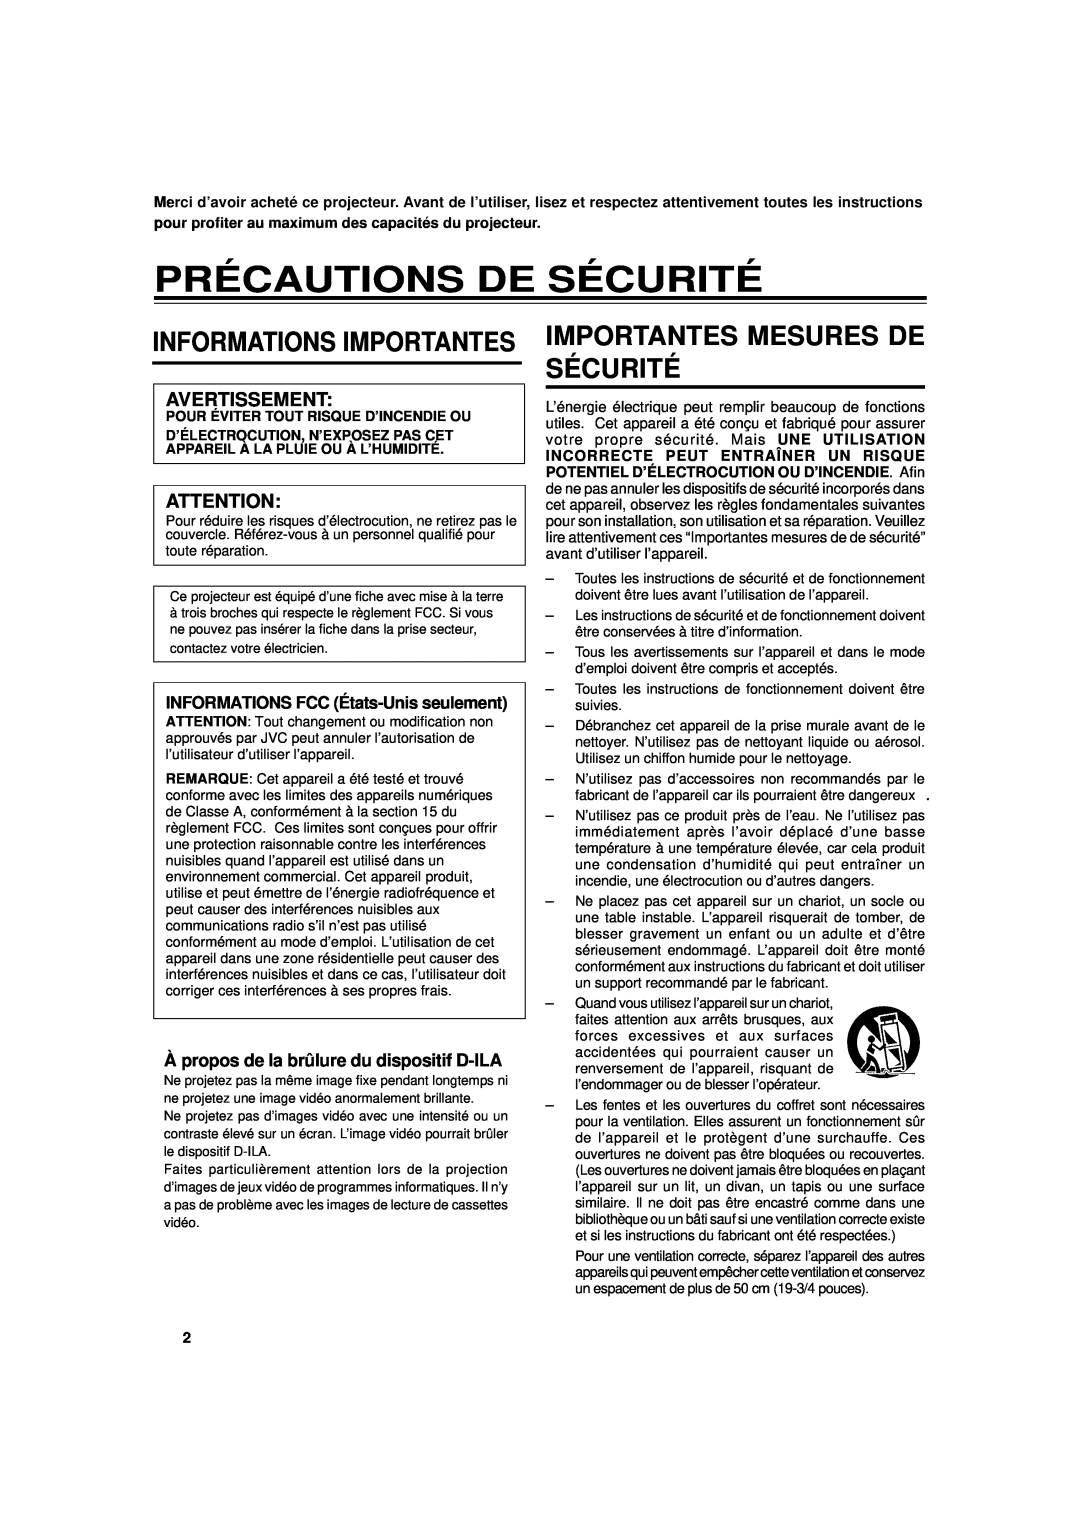 JVC DLA-G11U manual Précautions De Sécurité, Importantes Mesures De Sécurité, Informations Importantes 